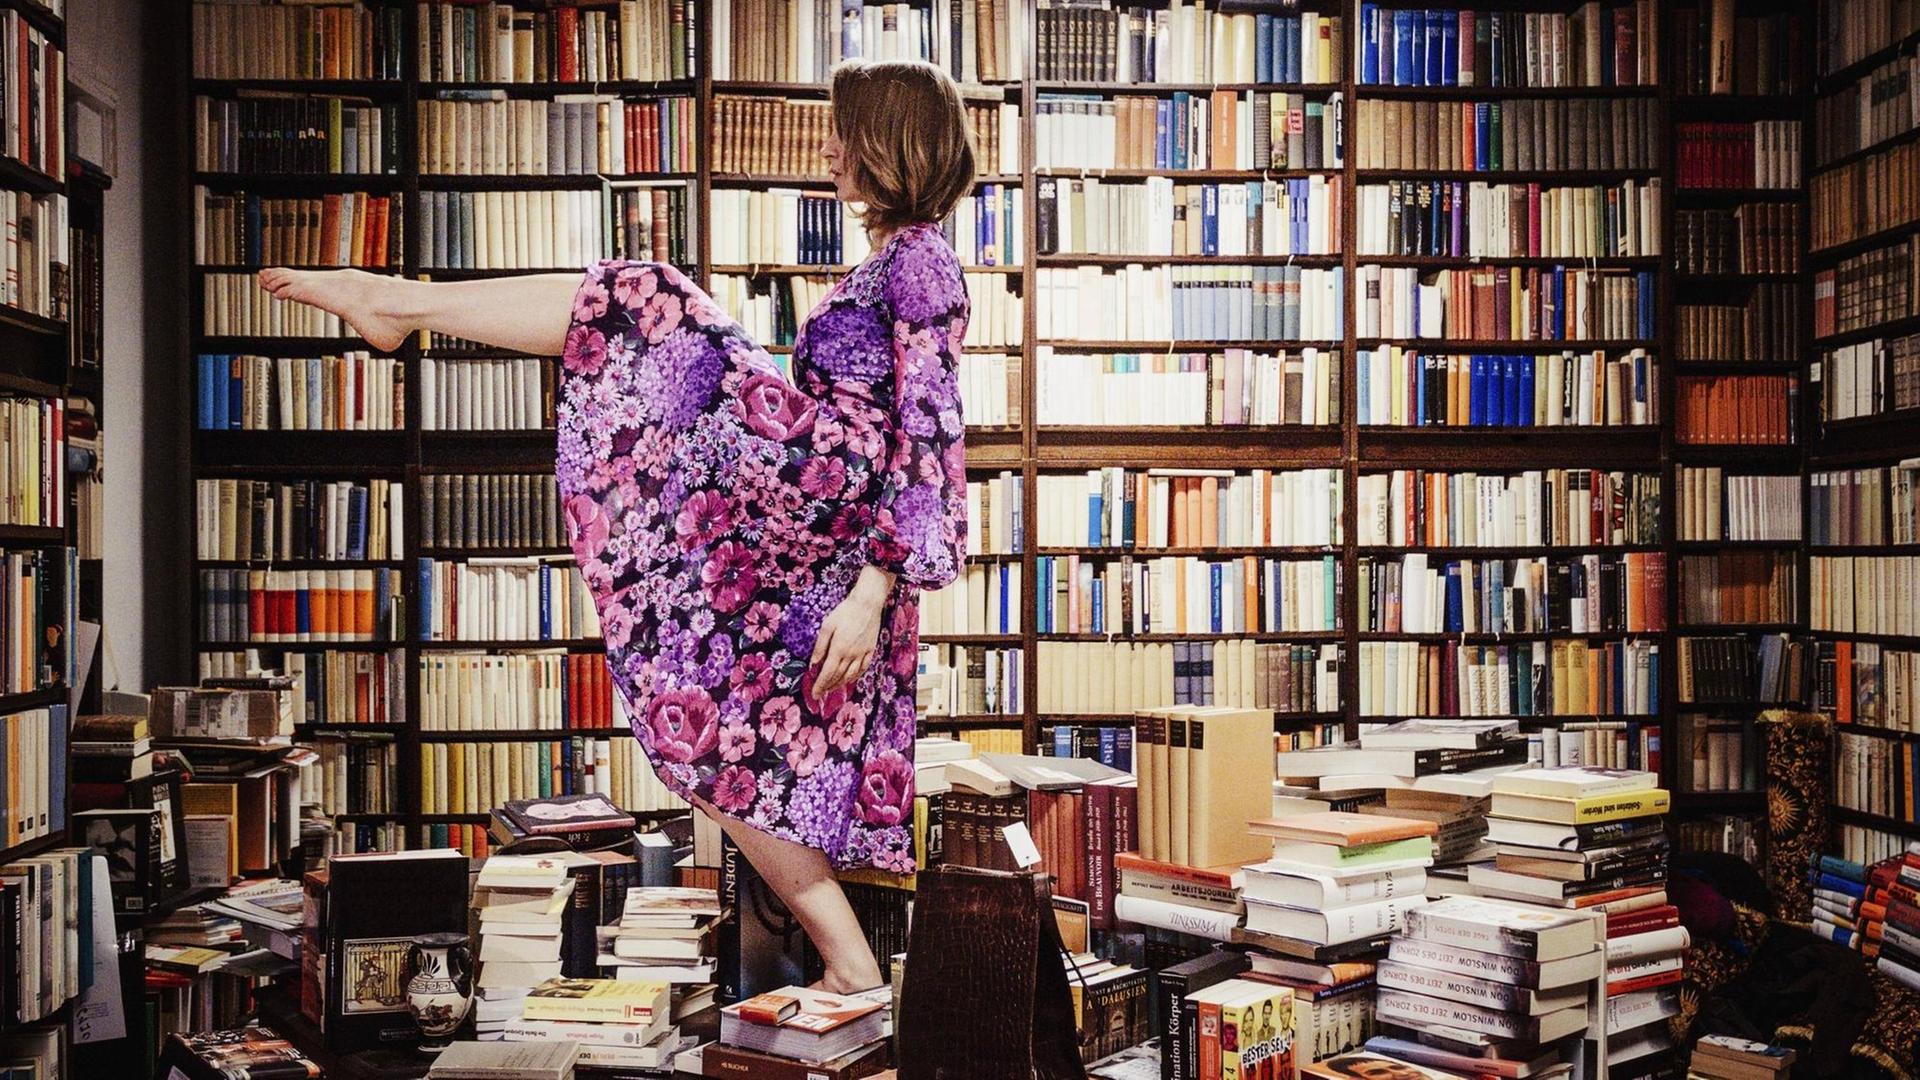 Eine Frau tanzt auf einem Stapel von Bücher mitten in einer Bibliothek.